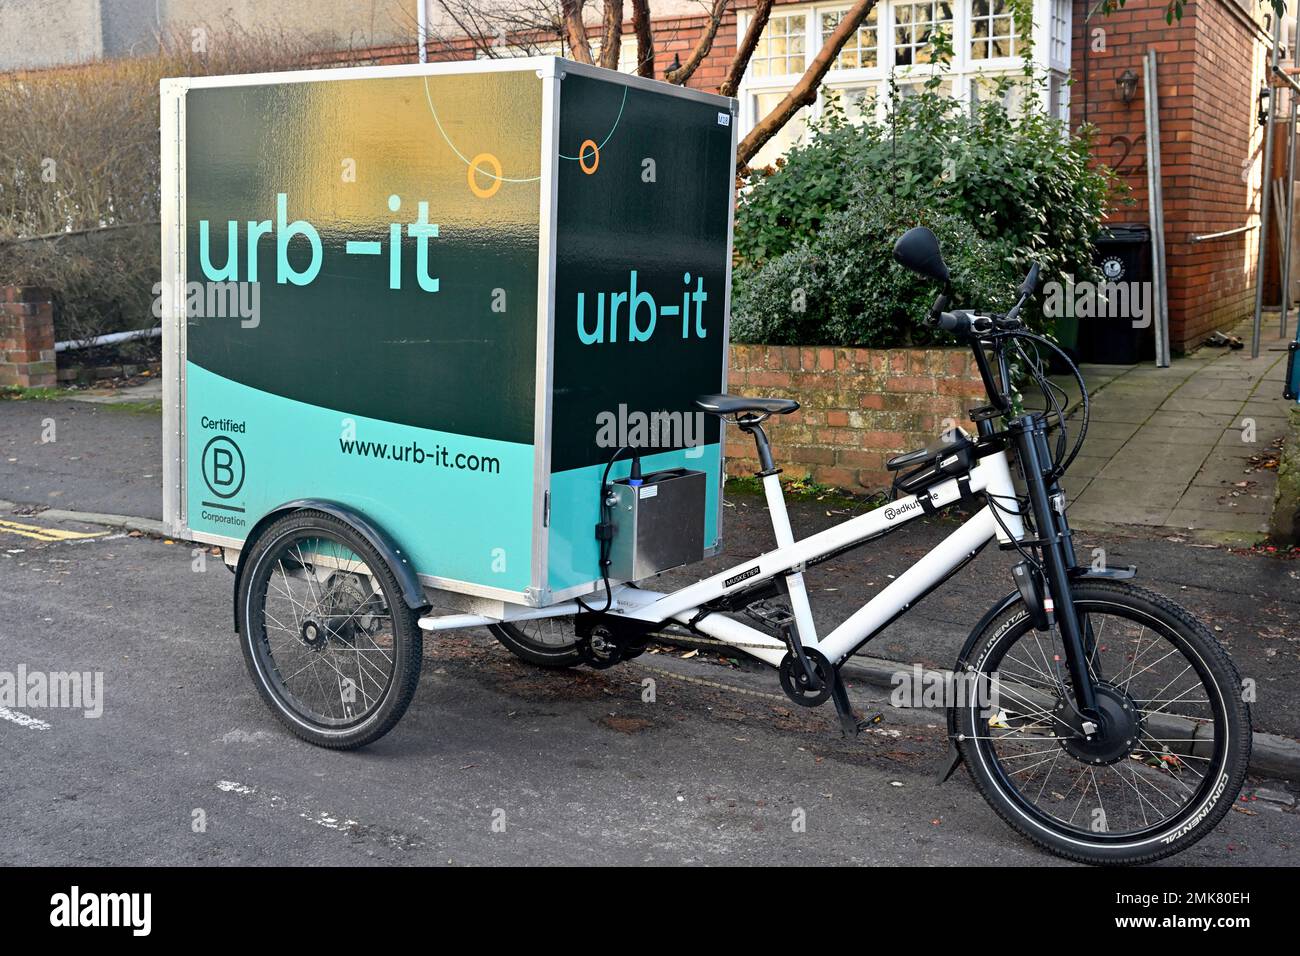 Vélo de cargaison utilisé pour la livraison de colis par vélo urb-it devant les maisons, Angleterre Banque D'Images